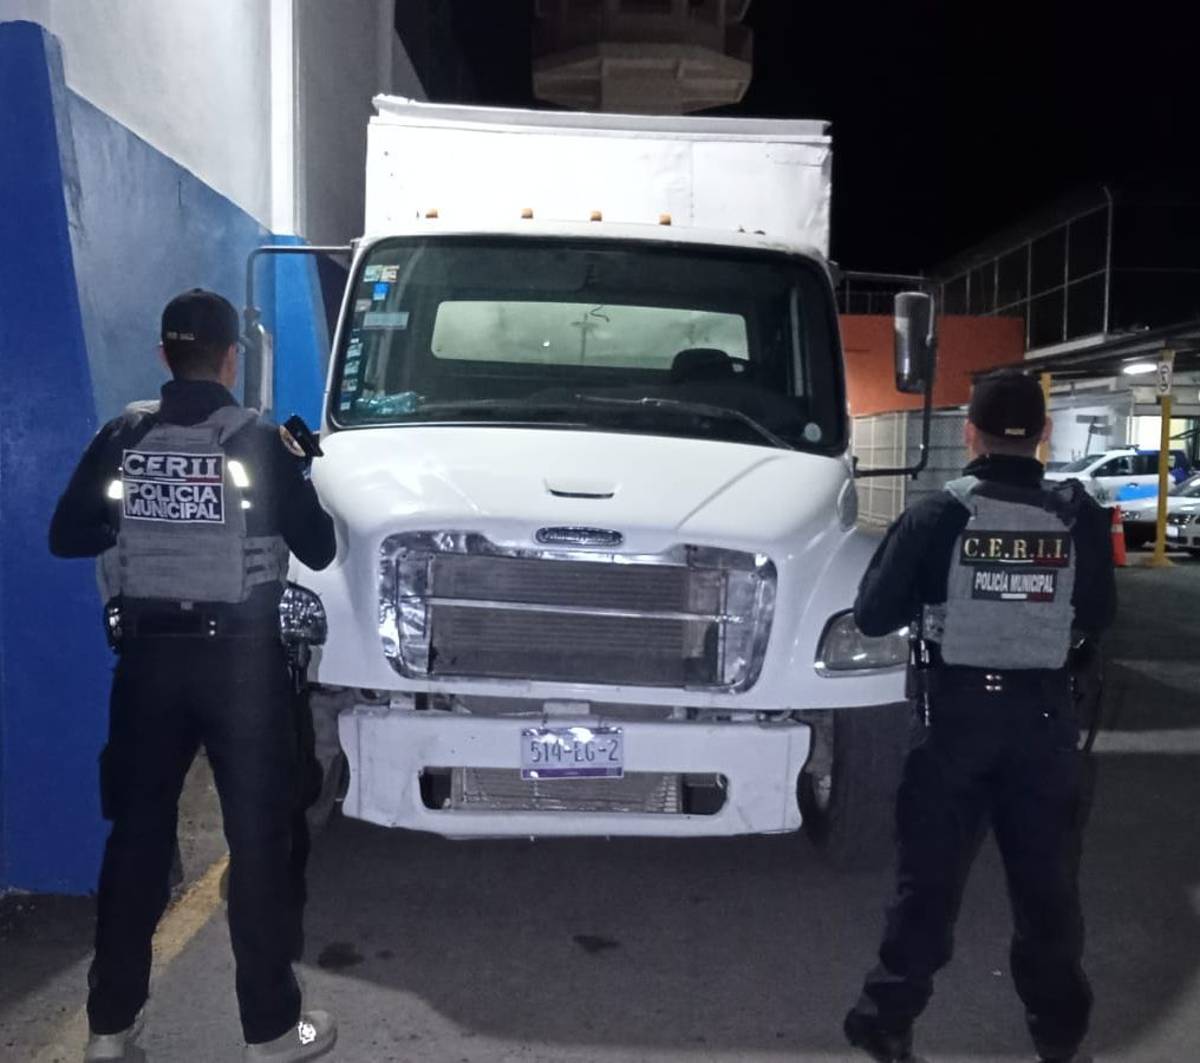 olicías Municipales de Irapuato recuperaron un camión con reporte de robo, aseguraron más de 9 mil litros de hidrocarburo